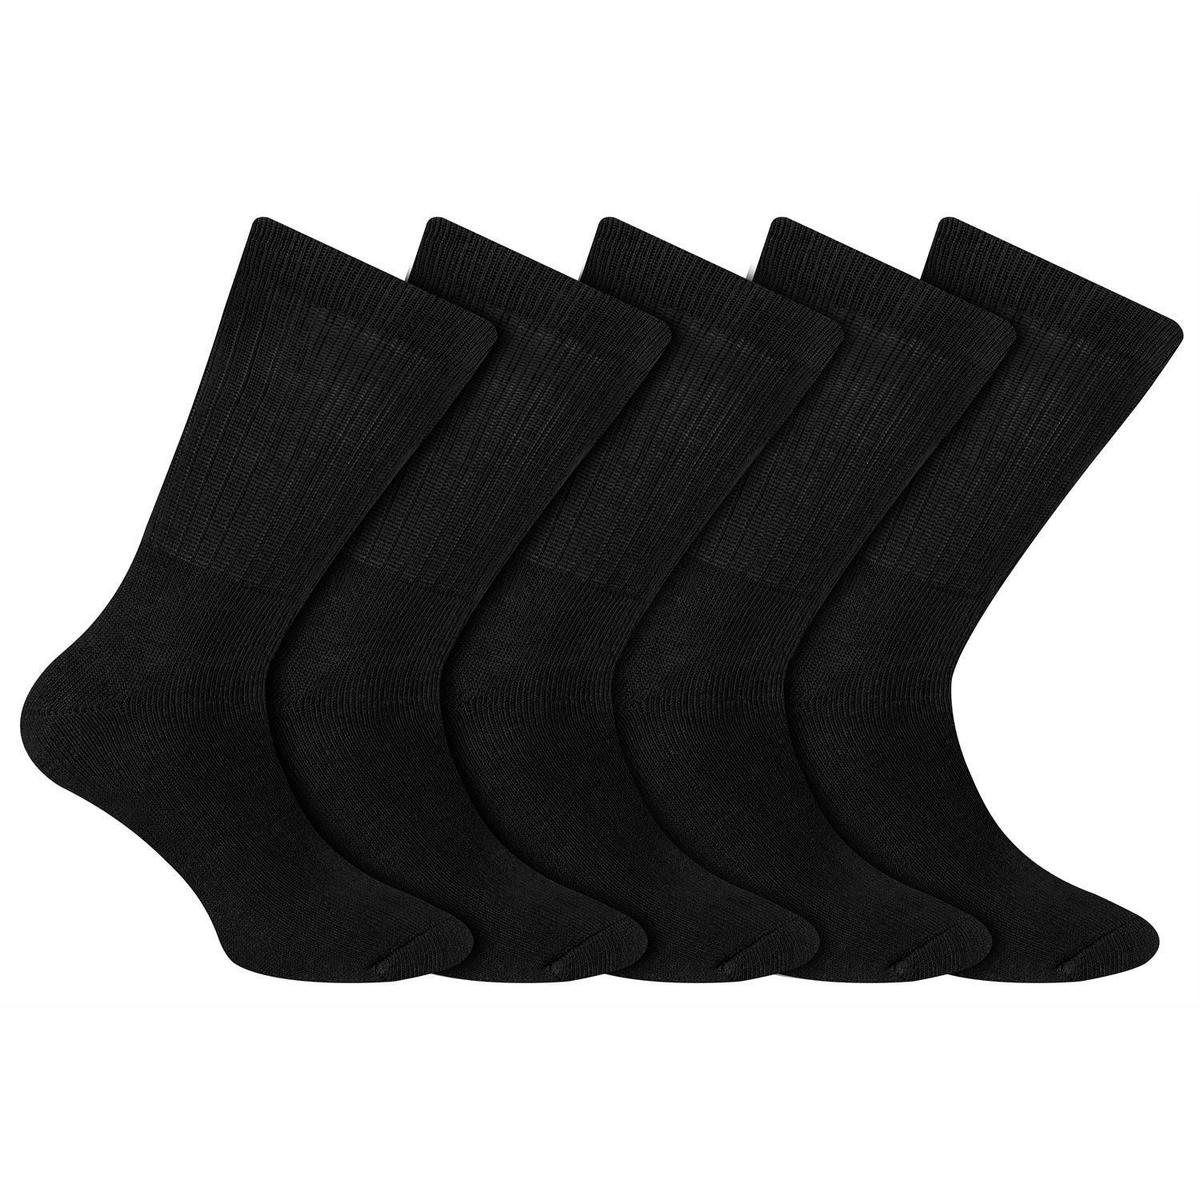 Achat / Vente Dim Mi-chaussettes homme noir, Taille 39/42 5 paires